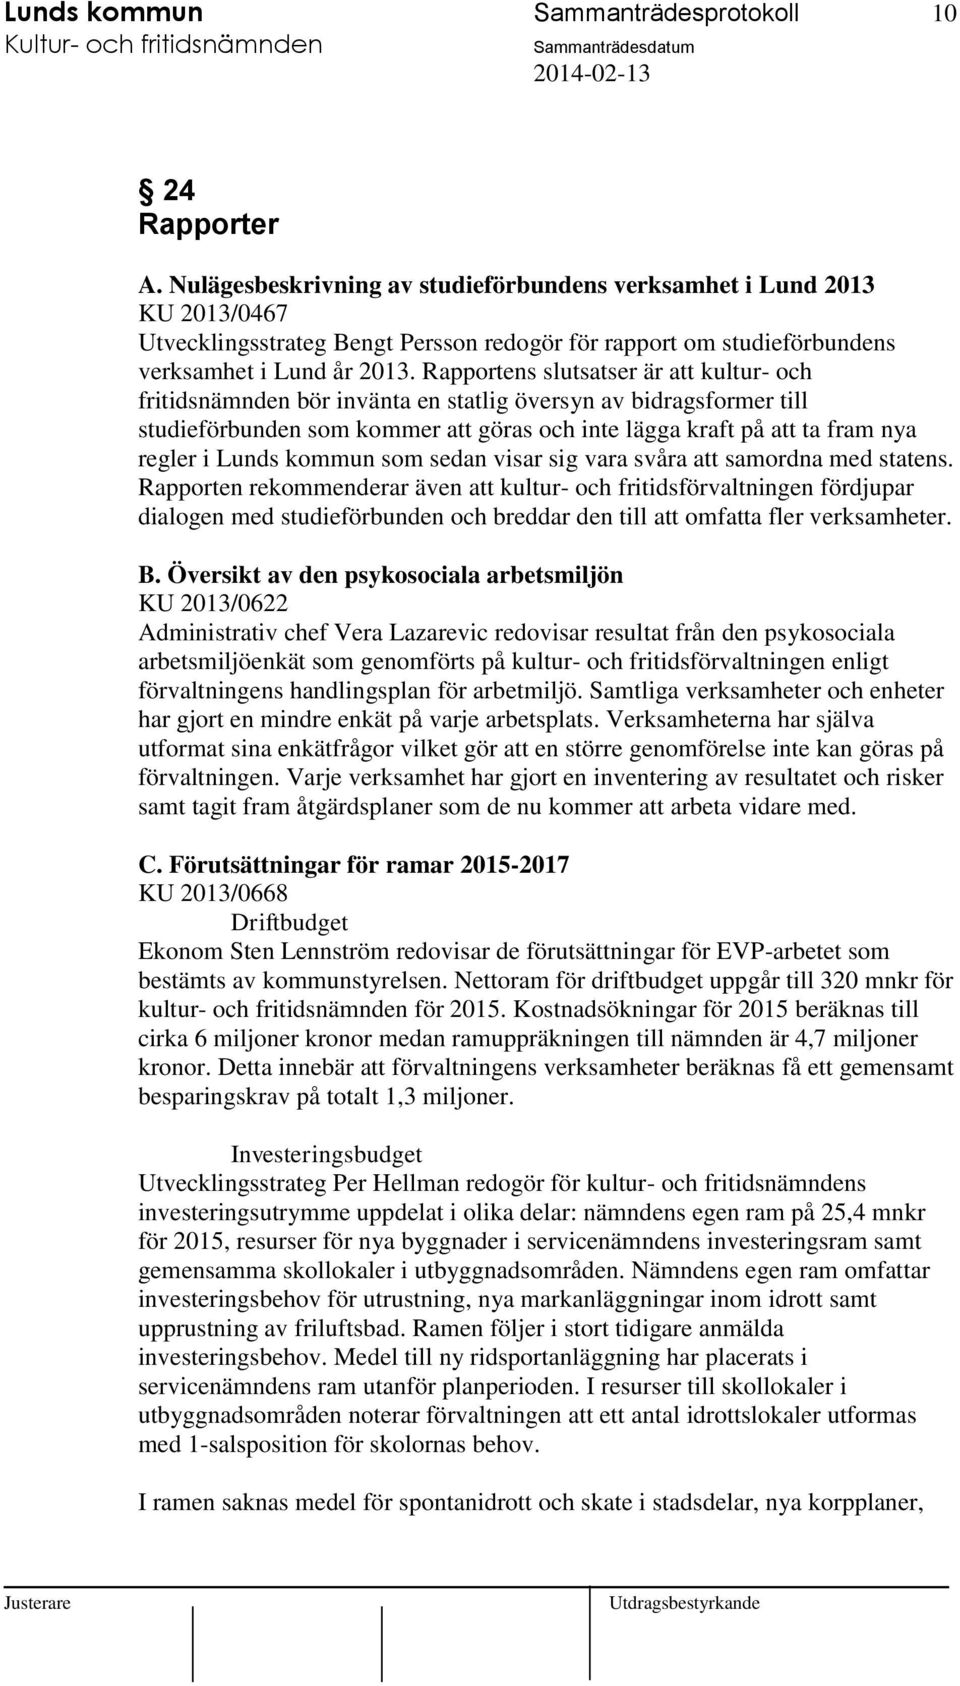 Rapportens slutsatser är kultur- och fritidsnämnden bör invänta en statlig översyn av bidragsformer till studieförbunden som kommer göras och inte lägga kraft på ta fram nya regler i Lunds kommun som